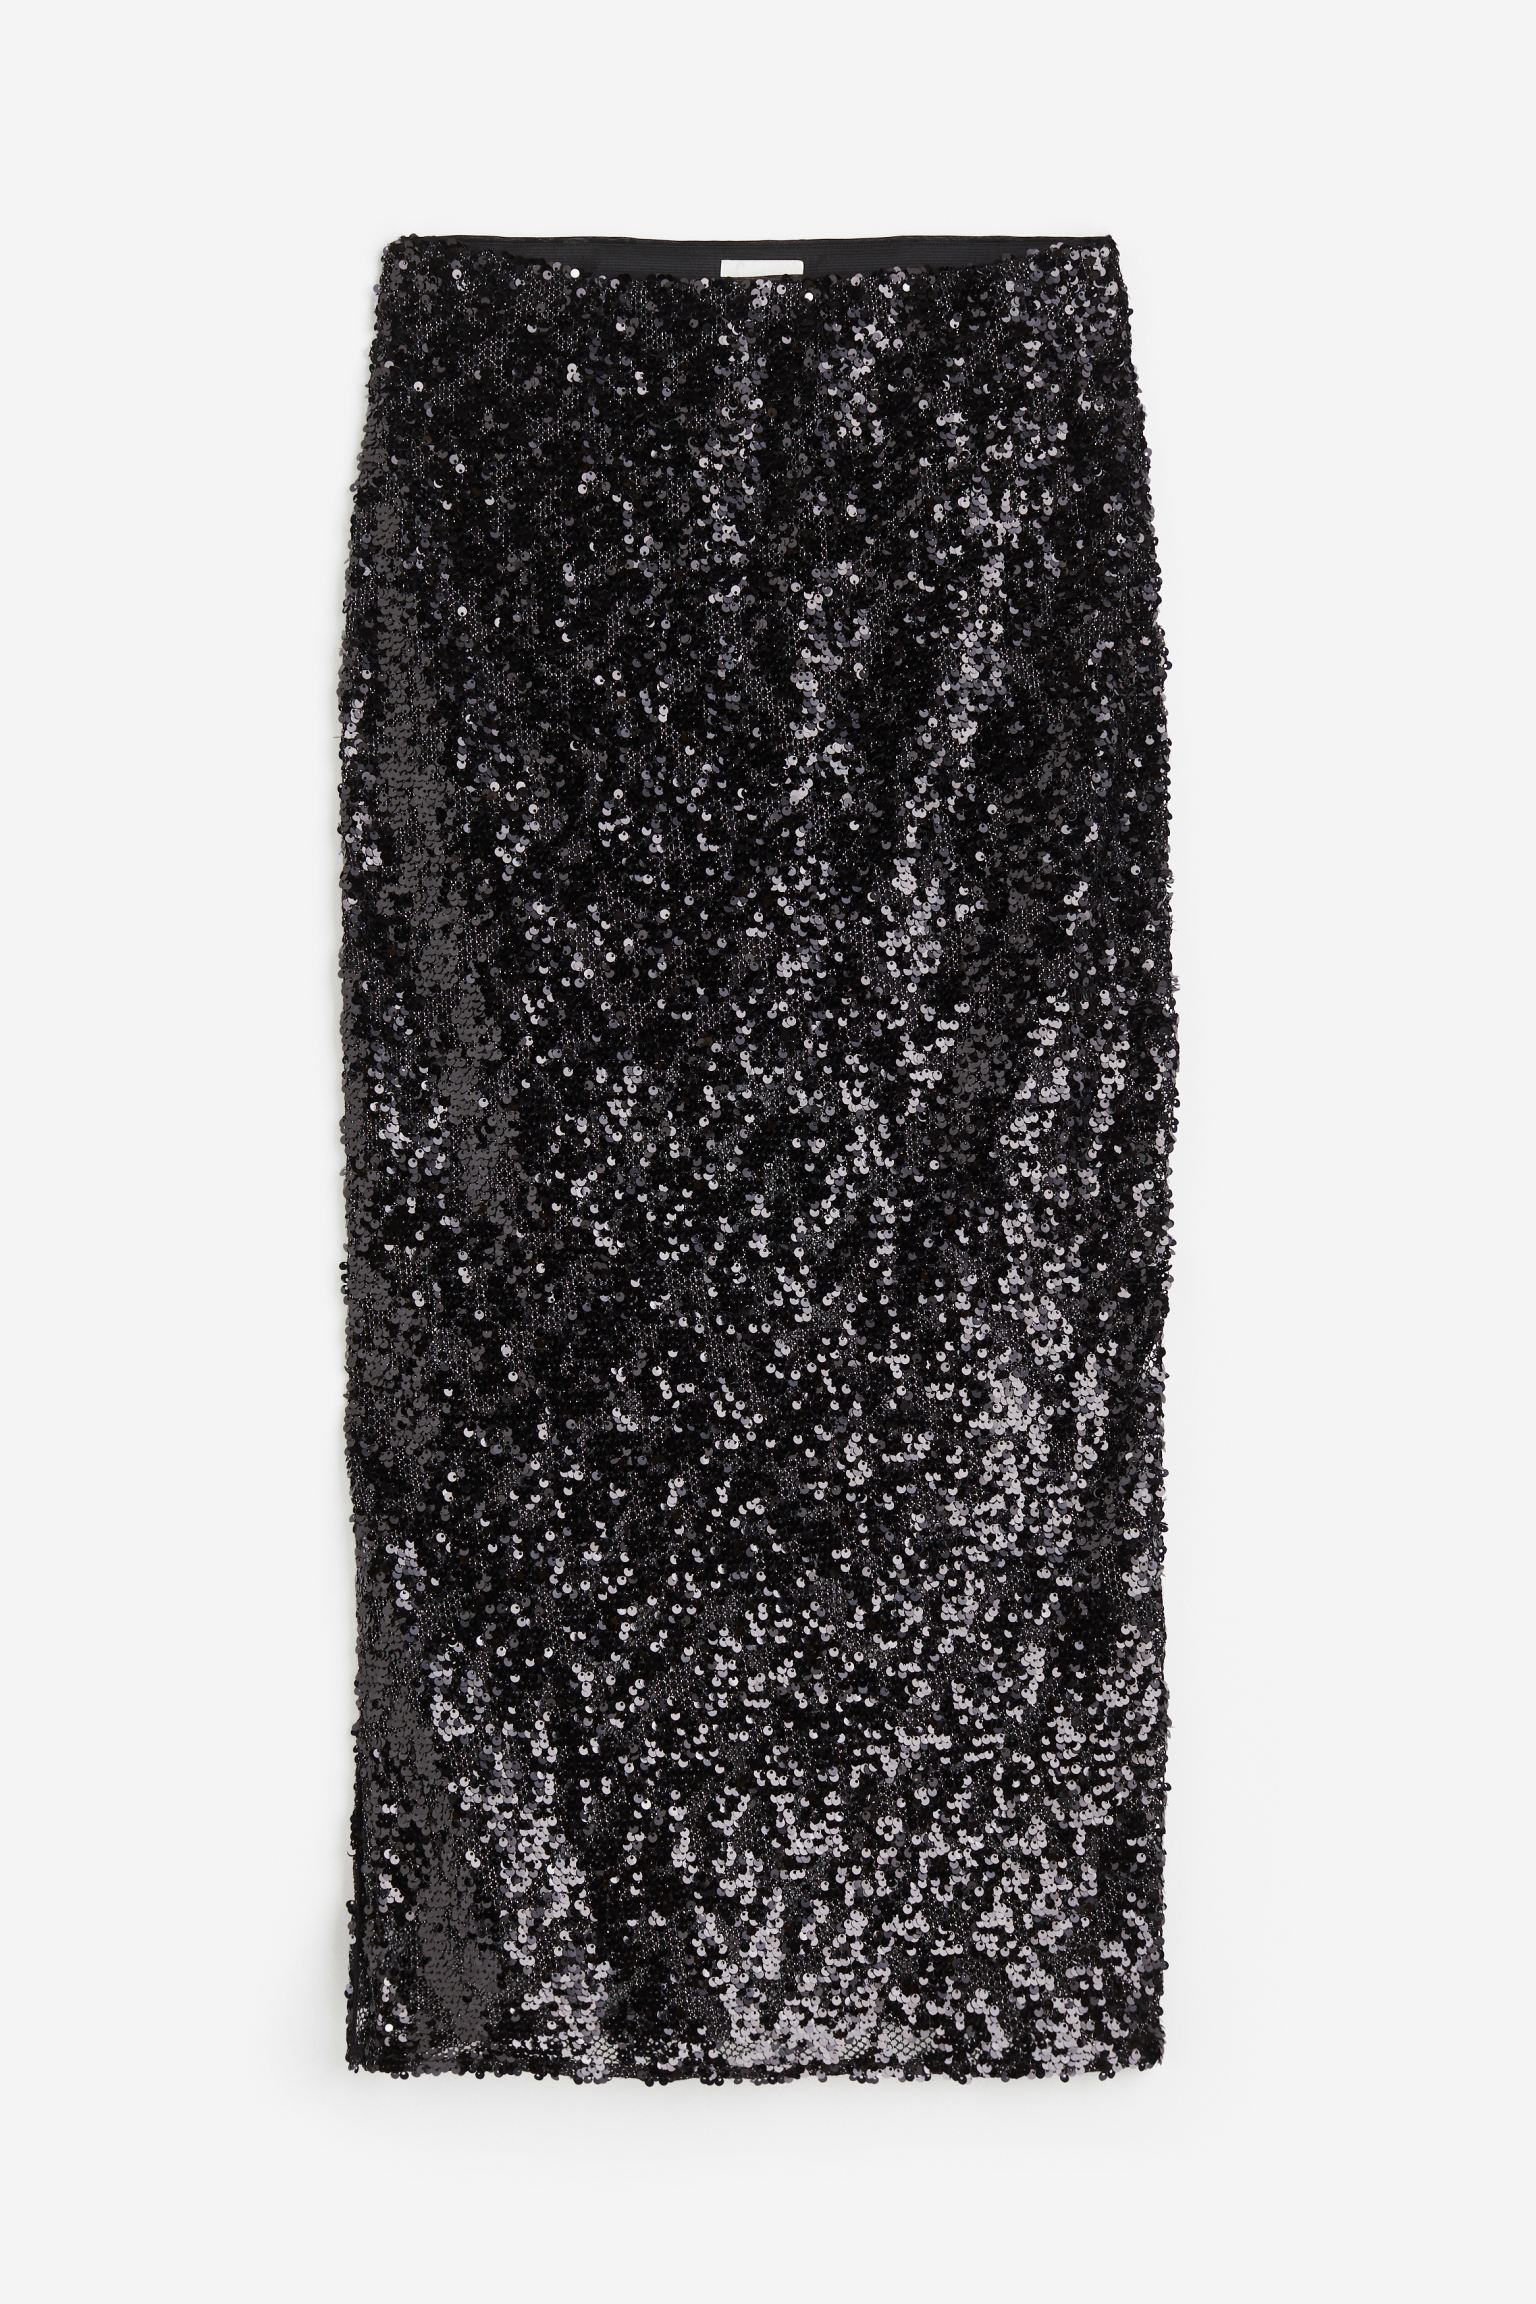 Юбка H&M Sequined, черный юбка карандаш женская до колен пикантная офисная облегающая замшевая повседневная юбка с завышенной талией с разрезом сзади облегающая м